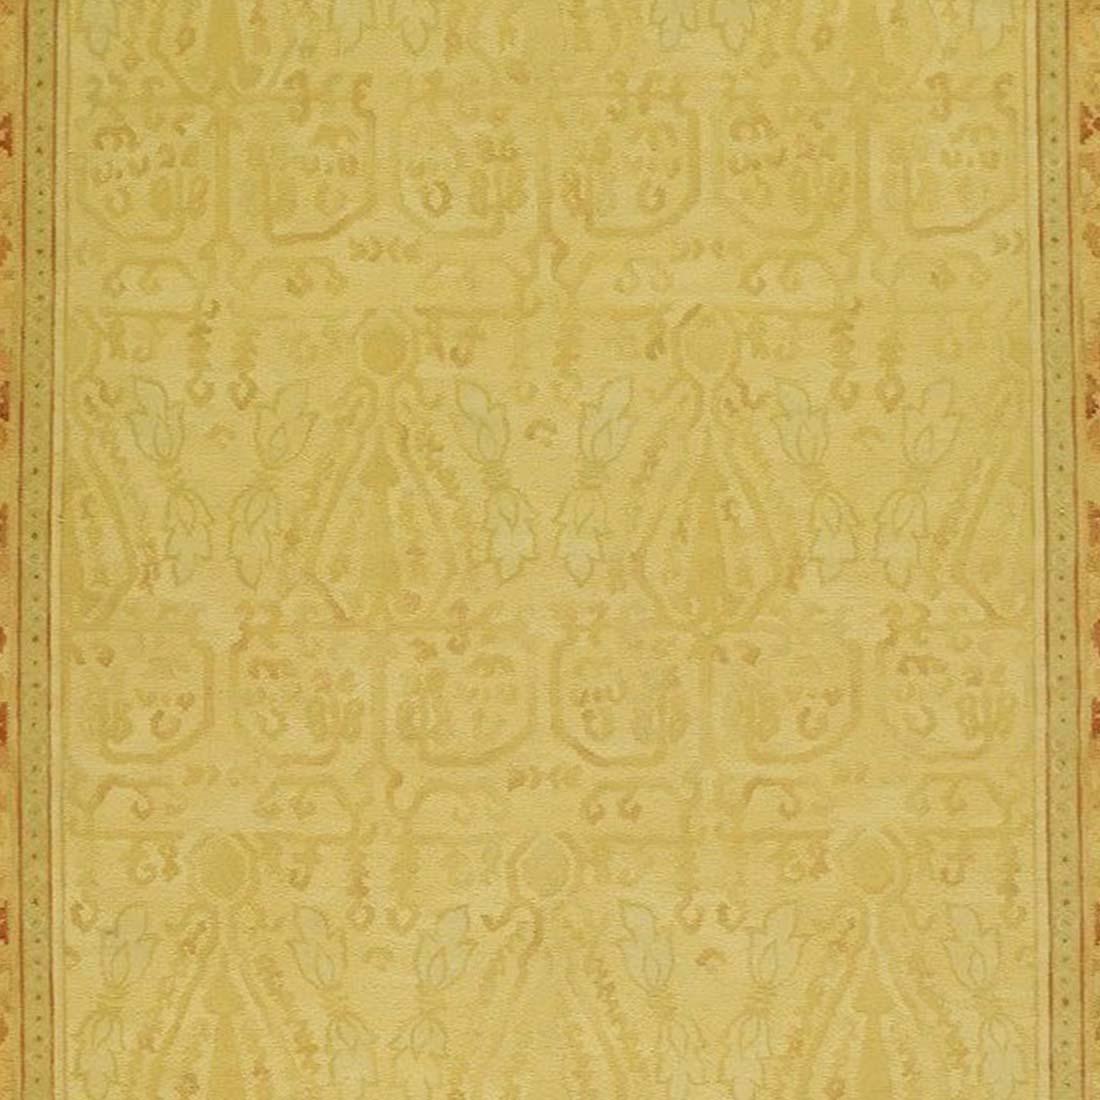 Un brocart de soie médiéval aux influences sahraouies et andalouses a inspiré ce fond safran et cette bordure aux tons ambrés. Ce tapis à poils coupés et bouclés, fabriqué à la main, est le résultat de la combinaison d'un tissage bouclé inventé par